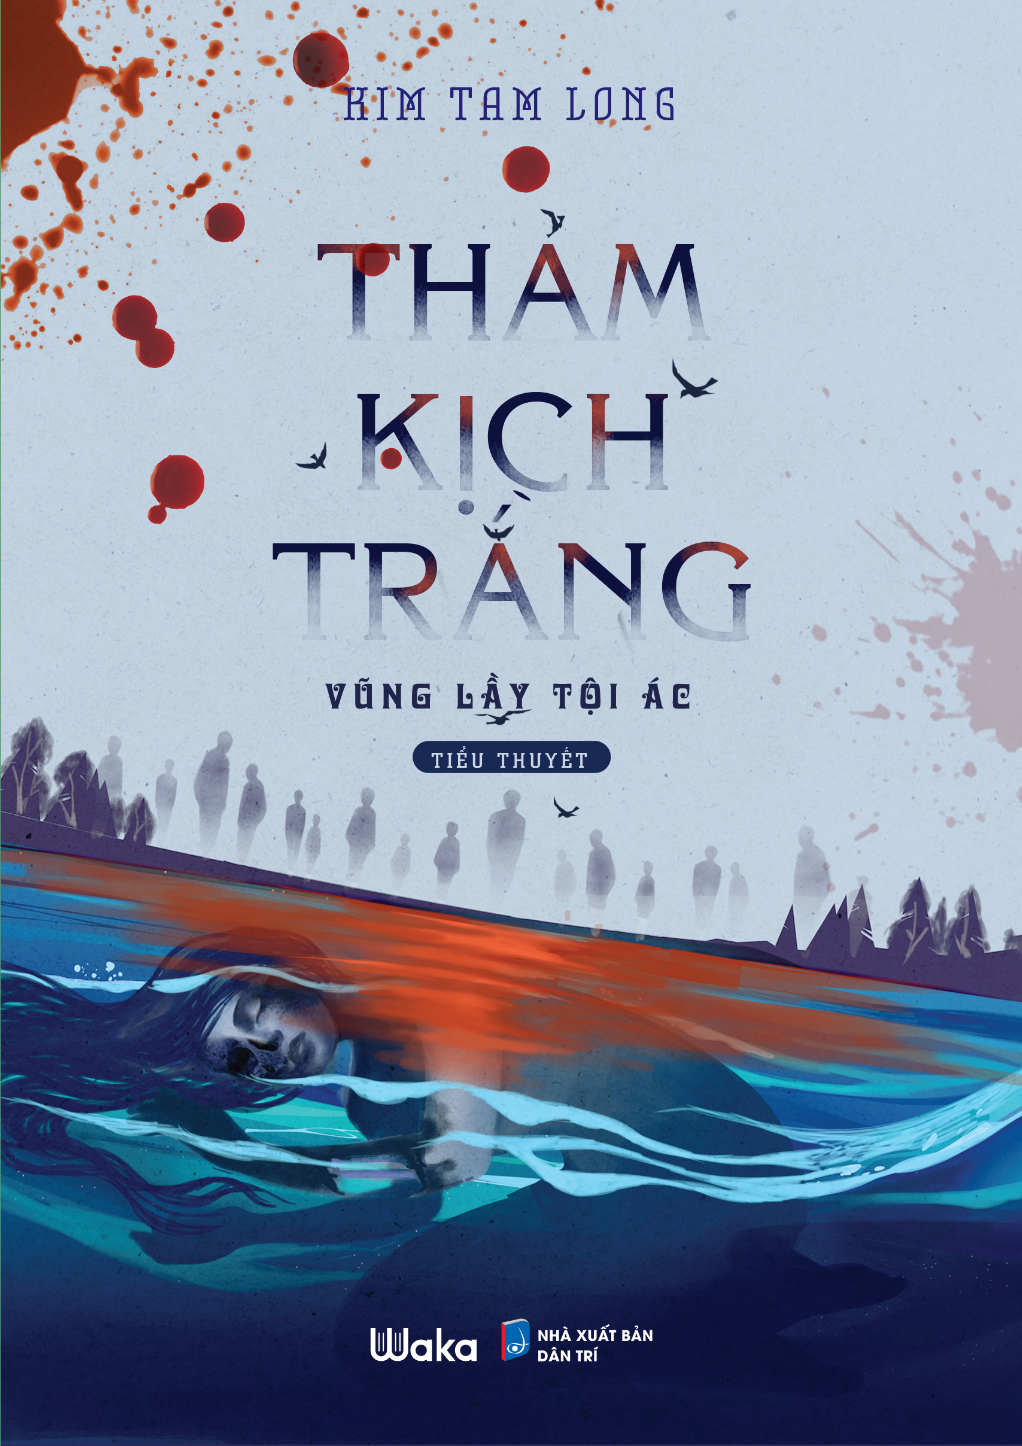 Thảm Kịch Trắng - Vũng lầy tội ác - Tác giả Kim Tam Long